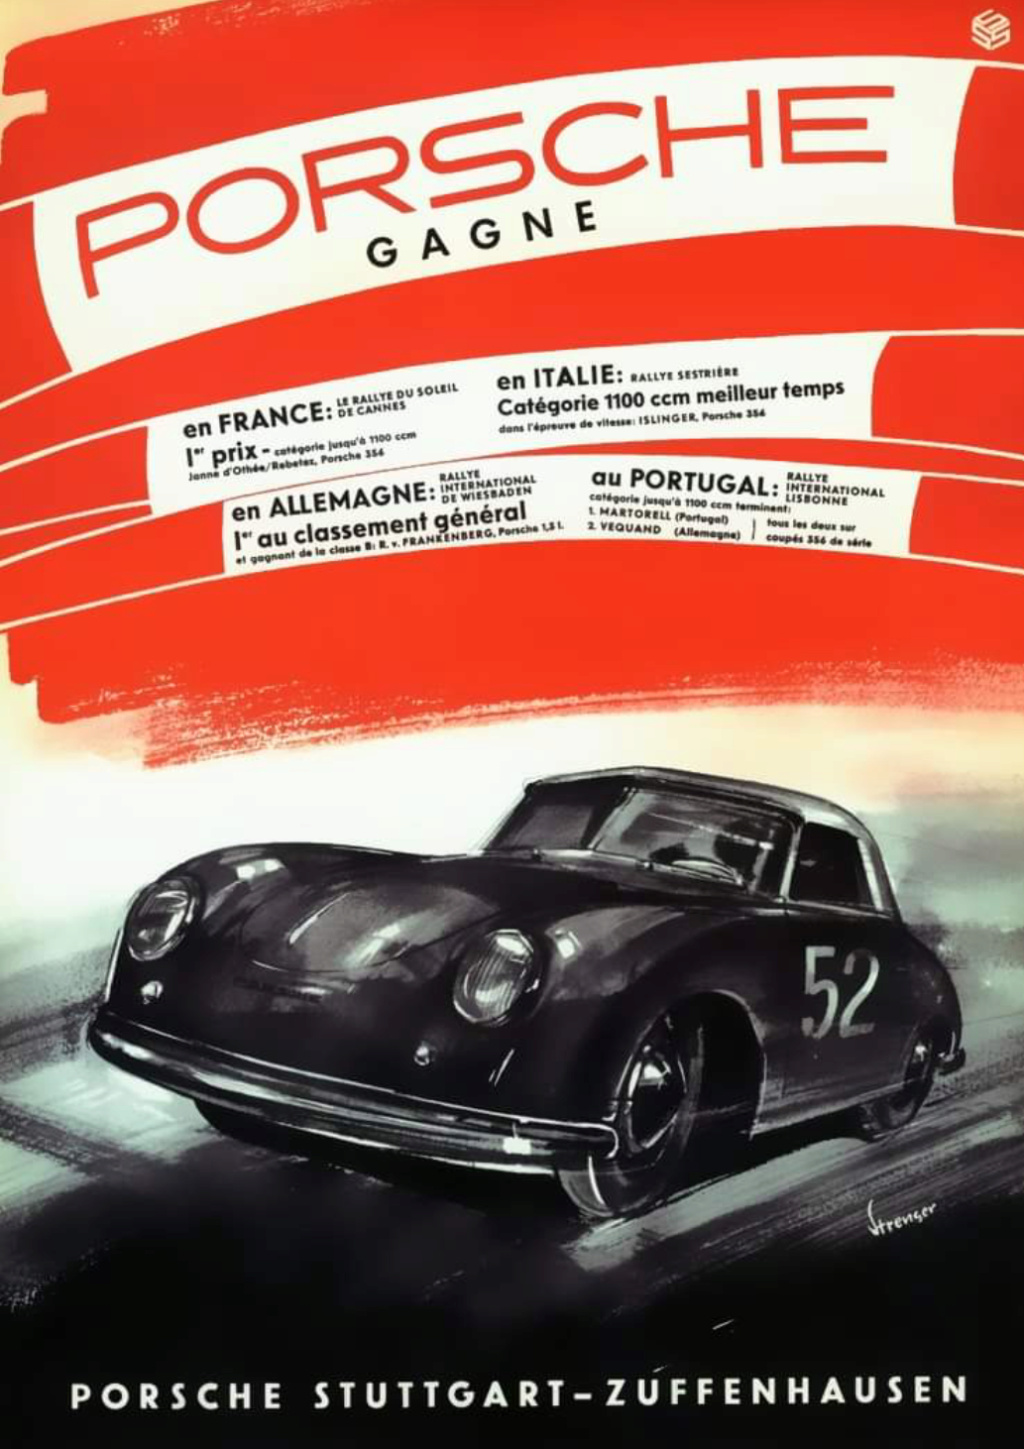 Affiches Porsche dans la course Automobile - Page 3 Scree259